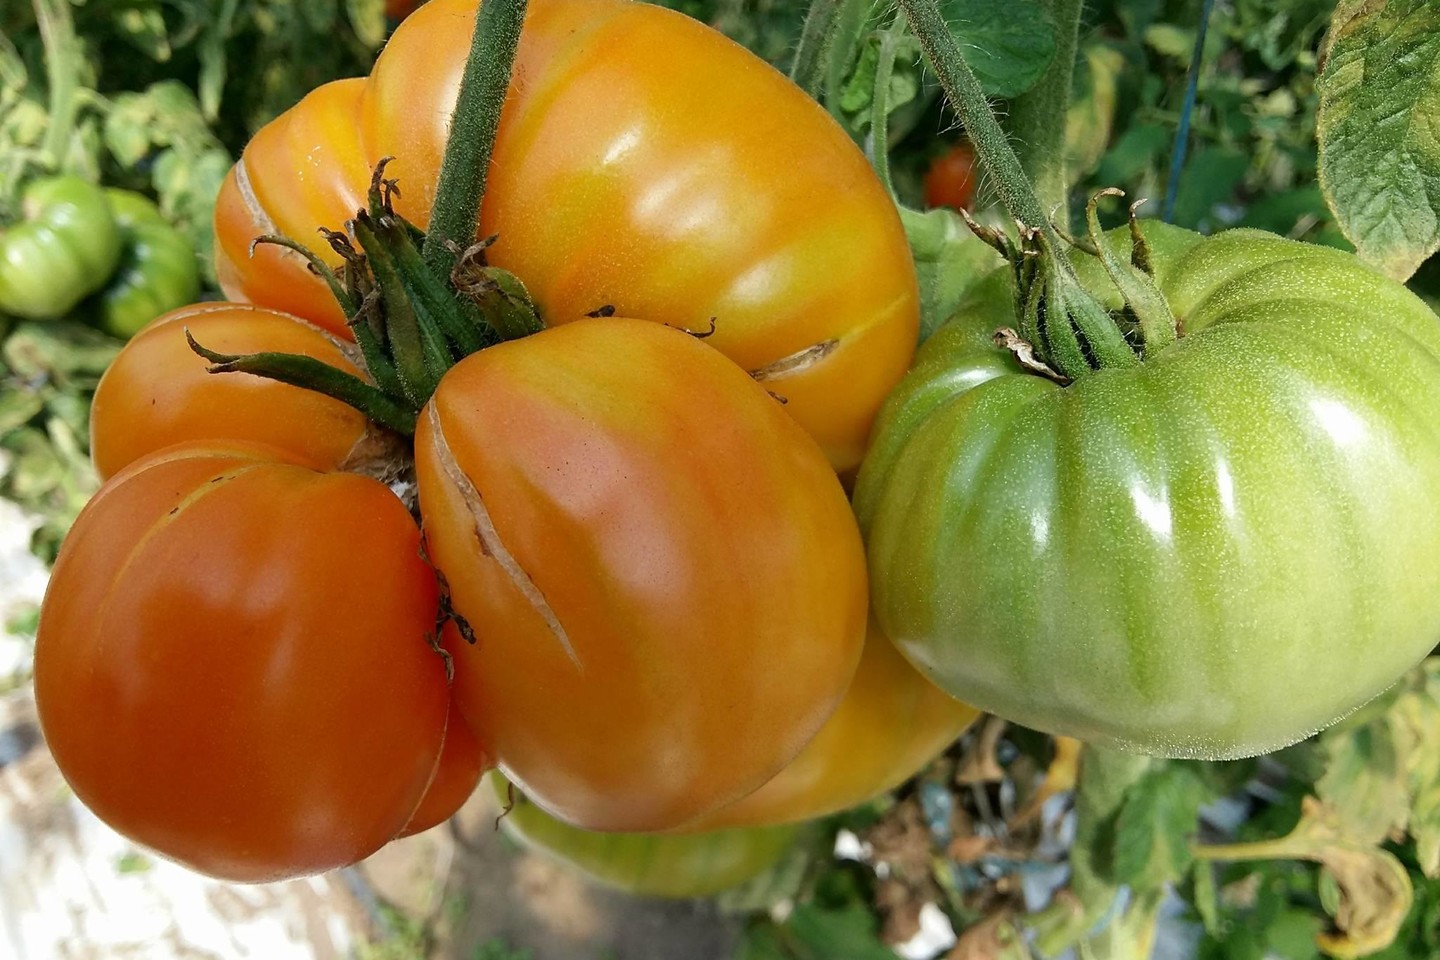 tenant Undulate Of God 10 metų pomidorus auginanti ramygalietė skelbia geriausių veislių trejetuką